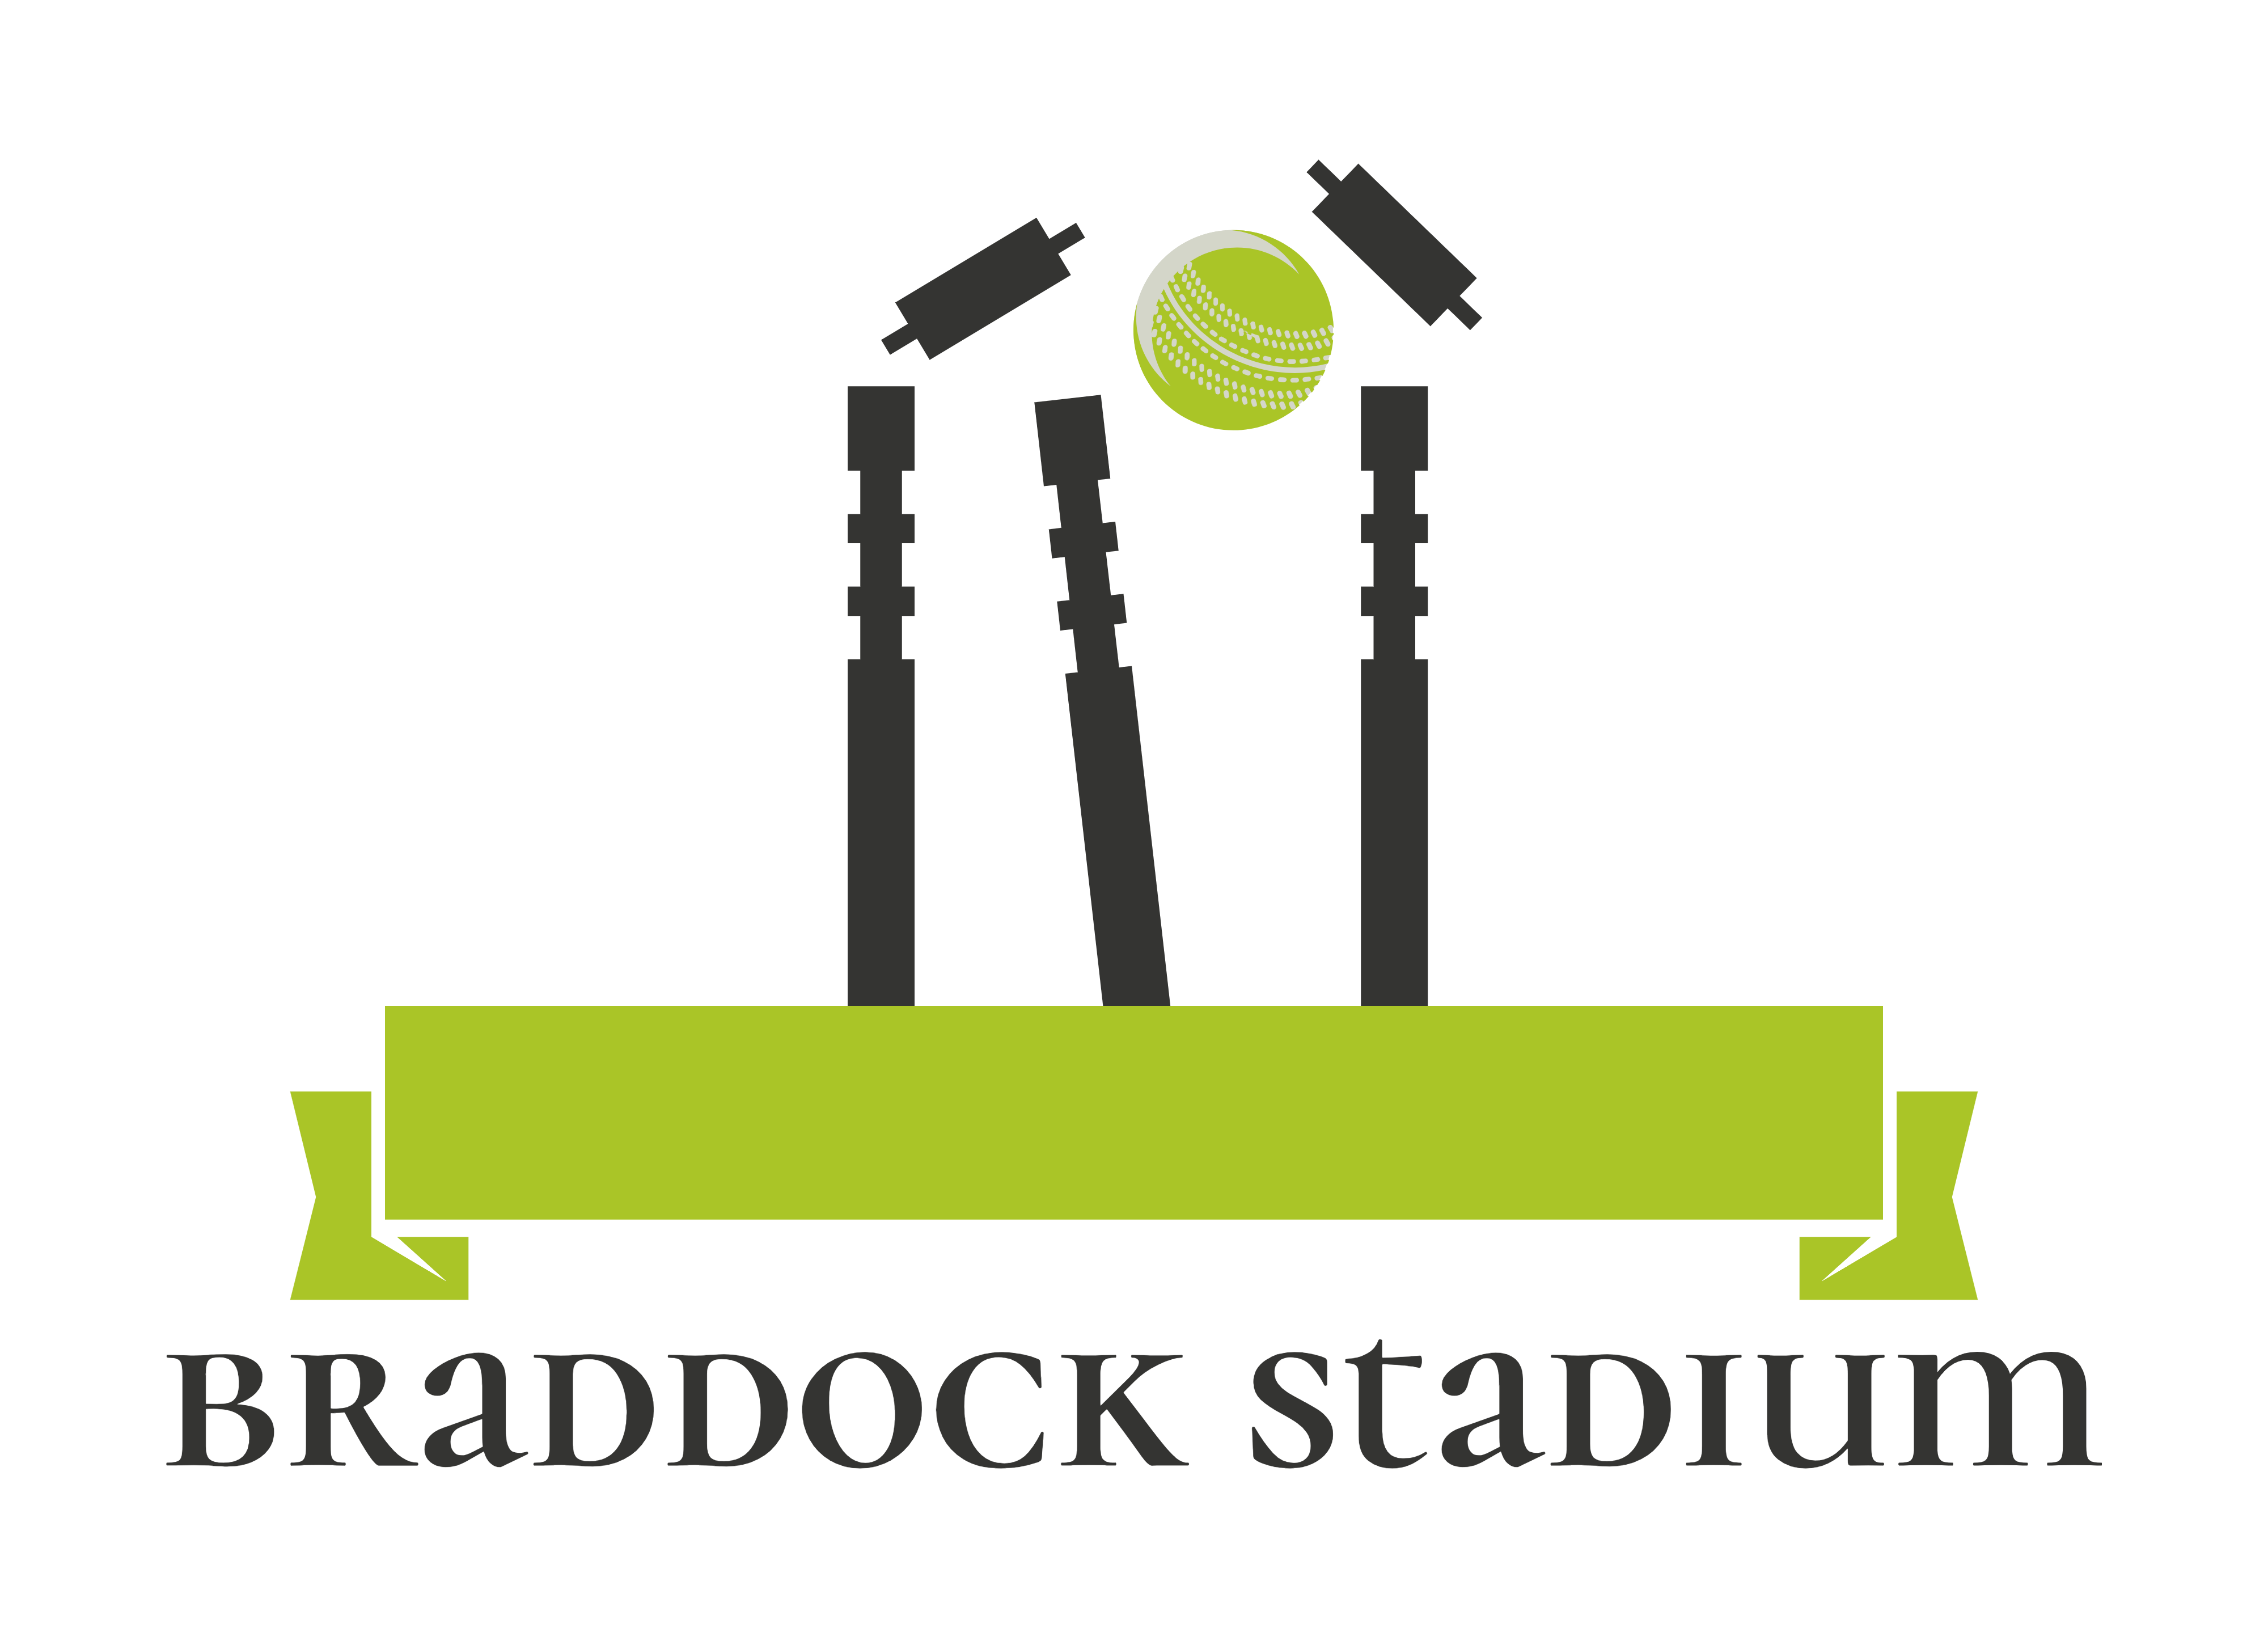 Braddock Stadium Project